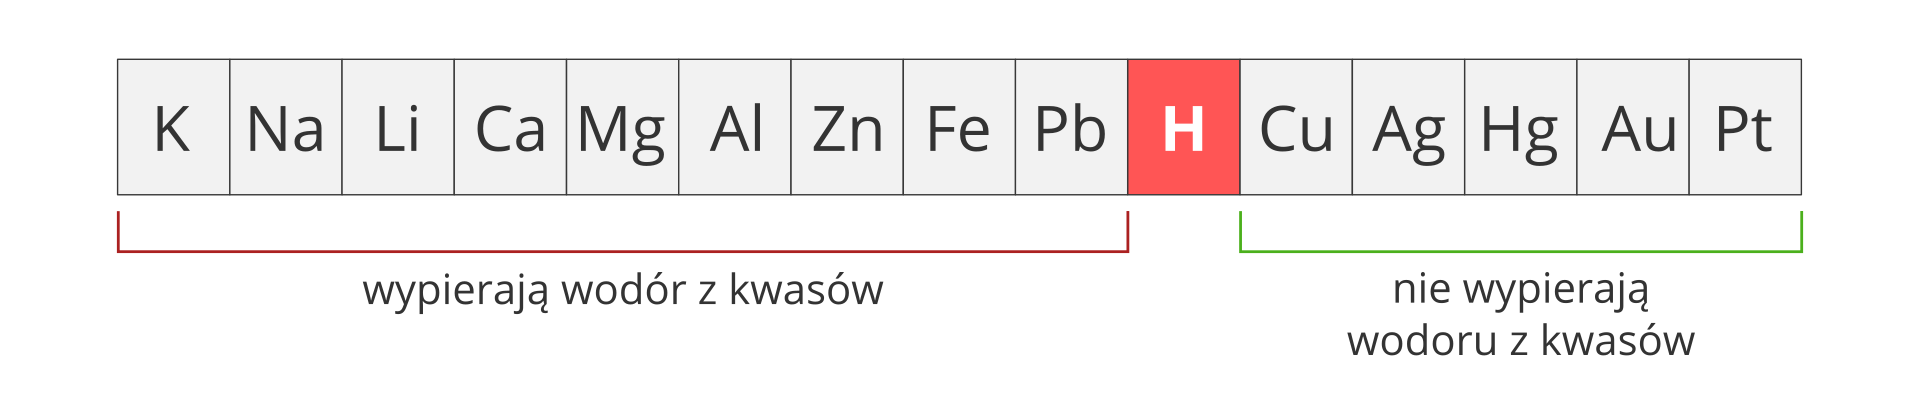 Ilustracja przedstawia szereg aktywności metali w postaci szarego paska, podzielonego na piętnaście kwadratowych pól. W każdym polu umieszczono symbol jednego pierwiastka. Licząc od lewej są to: K, Na, Li, Ca, Mg, Al, Zn, Fe, Pb, H, Cu, Ag, Hg, Au, Pt. Wodór, czyli szósty od prawej kwadrat z literą H wyróżniony został czerwonym tłem zamiast szarego. Obszar dziewięciu pierwiastków po lewej stronie wodoru spięty został czerwoną klamrą z podpisem Wypierają wodór z kwasów, natomiast obszar pięciu pierwiastków po prawej stronie wodoru spięty został zieloną klamrą z podpisem Nie wypierają wodoru z kwasów.